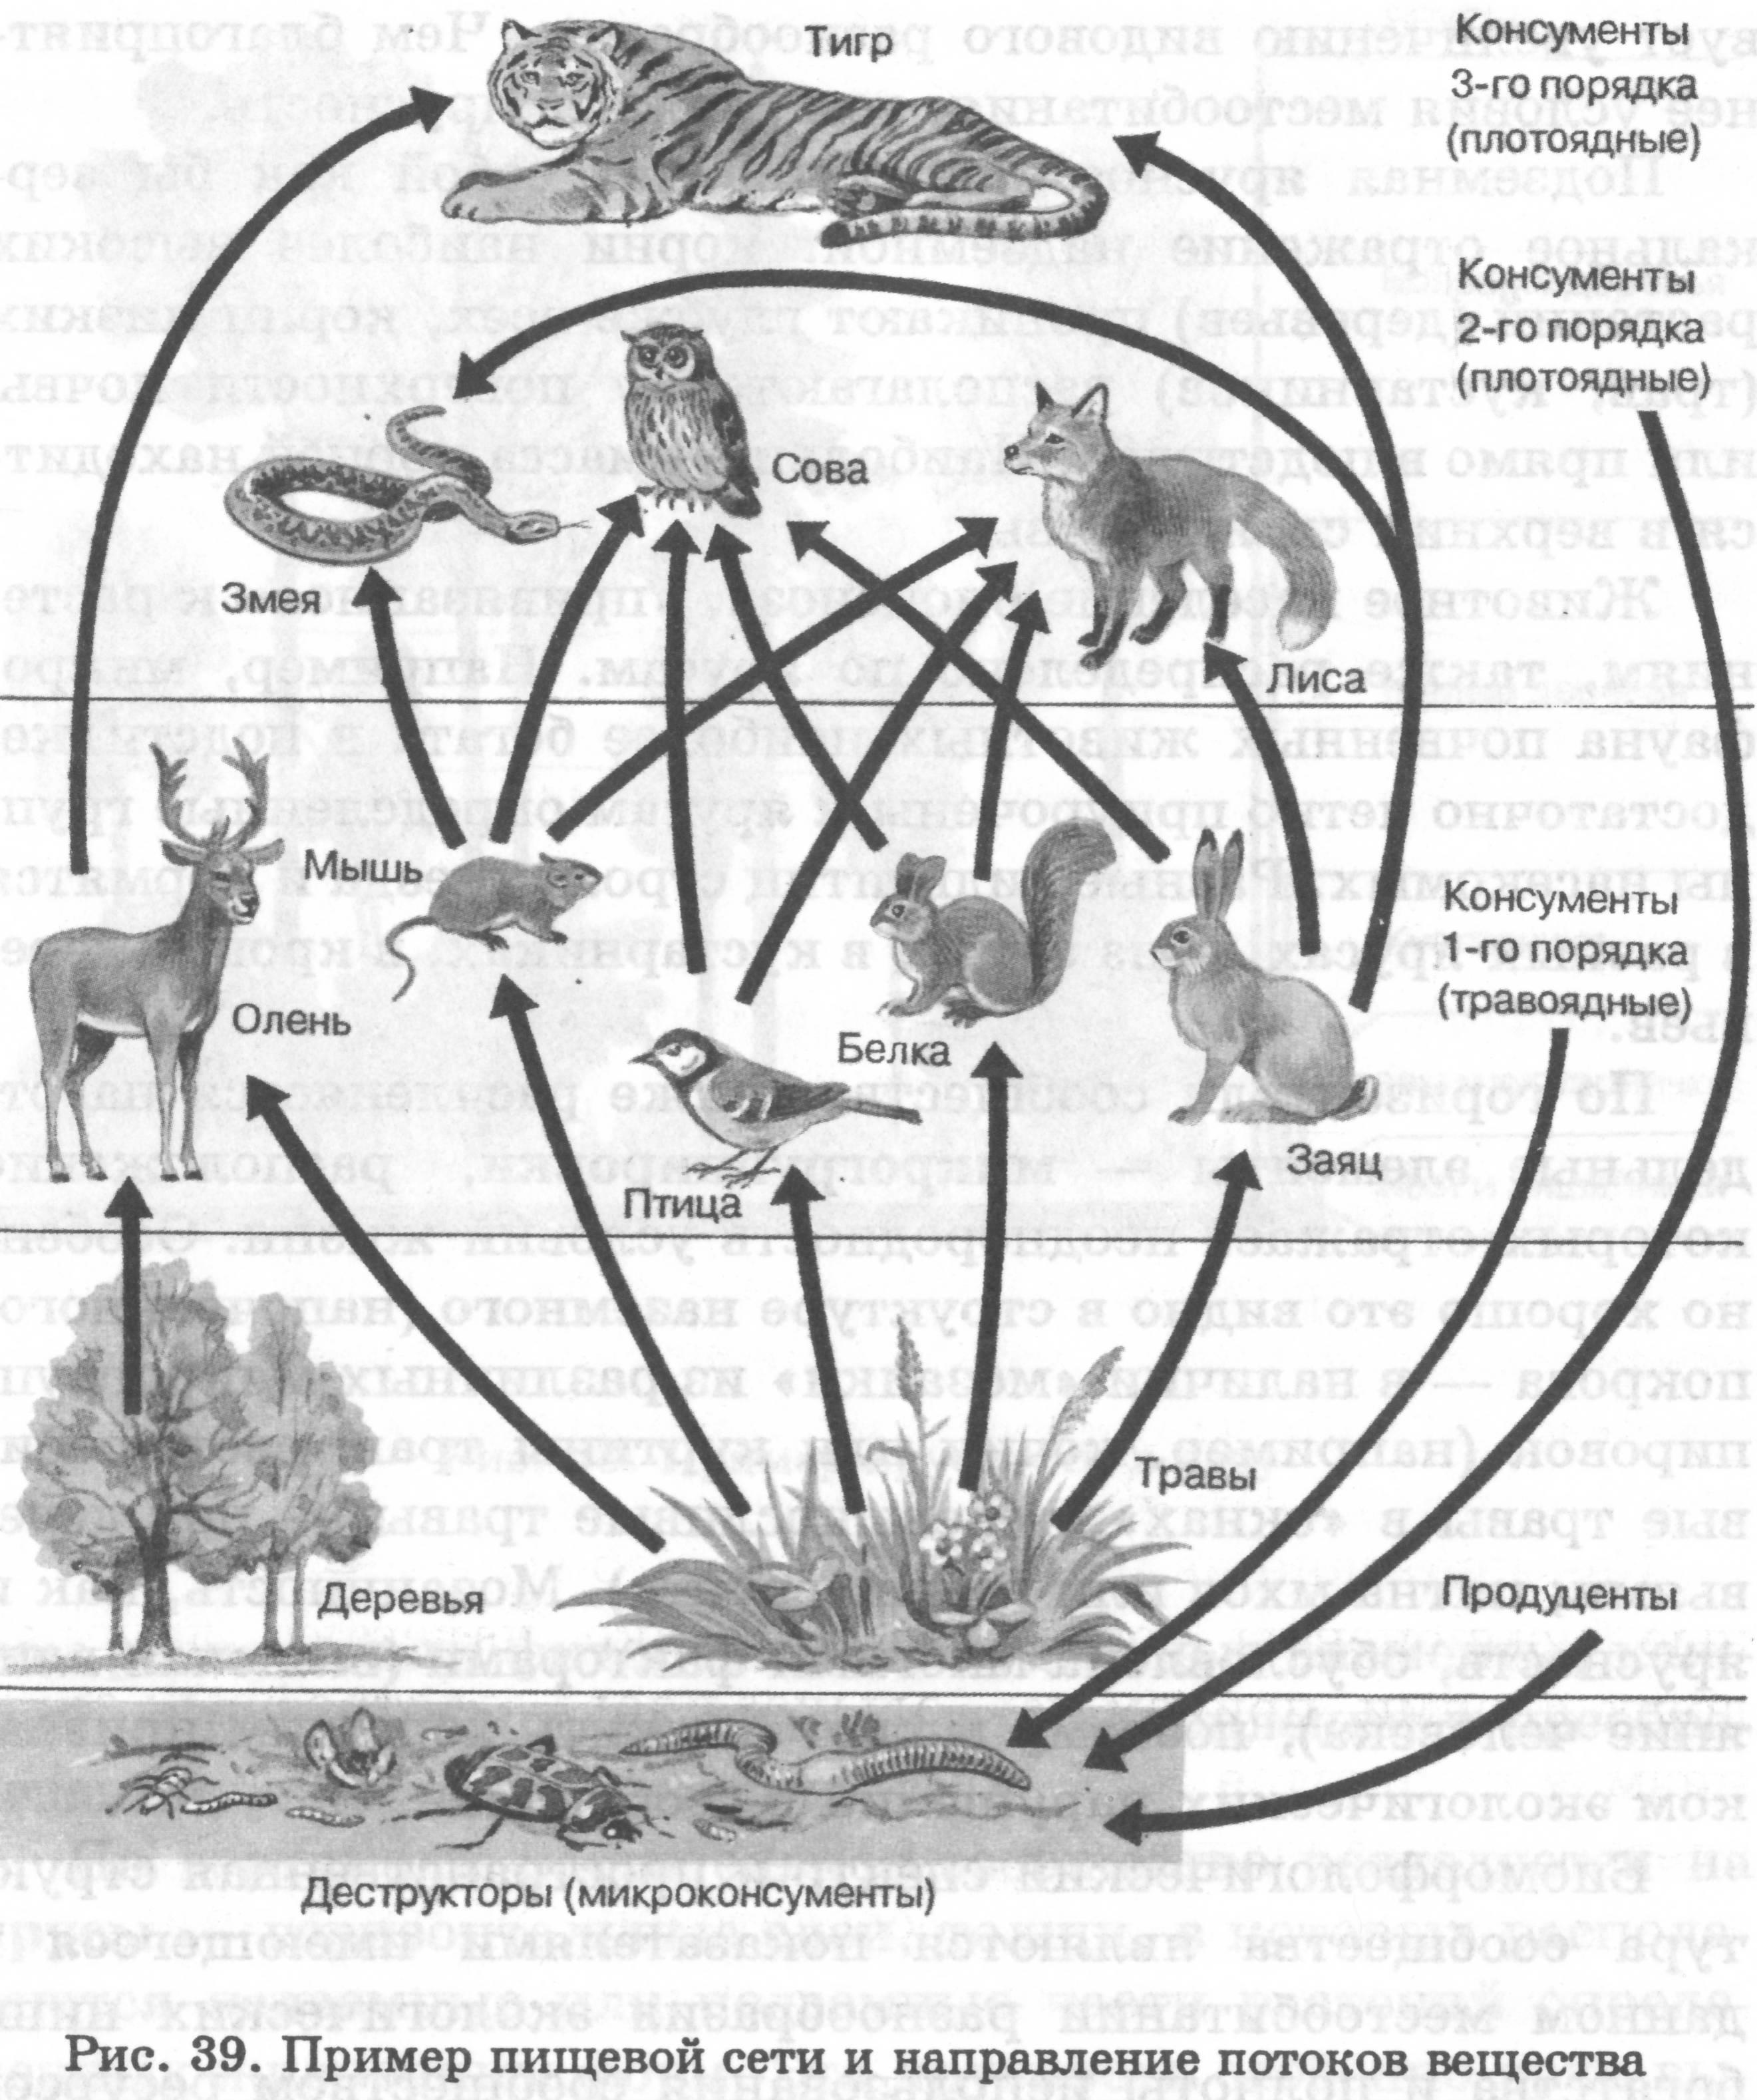 Заяц консумент какого порядка. Консумент 3 порядка в биоценозе. Пищевая сеть и направление потоков вещества. Схема консументов. Пищевая сеть леса.